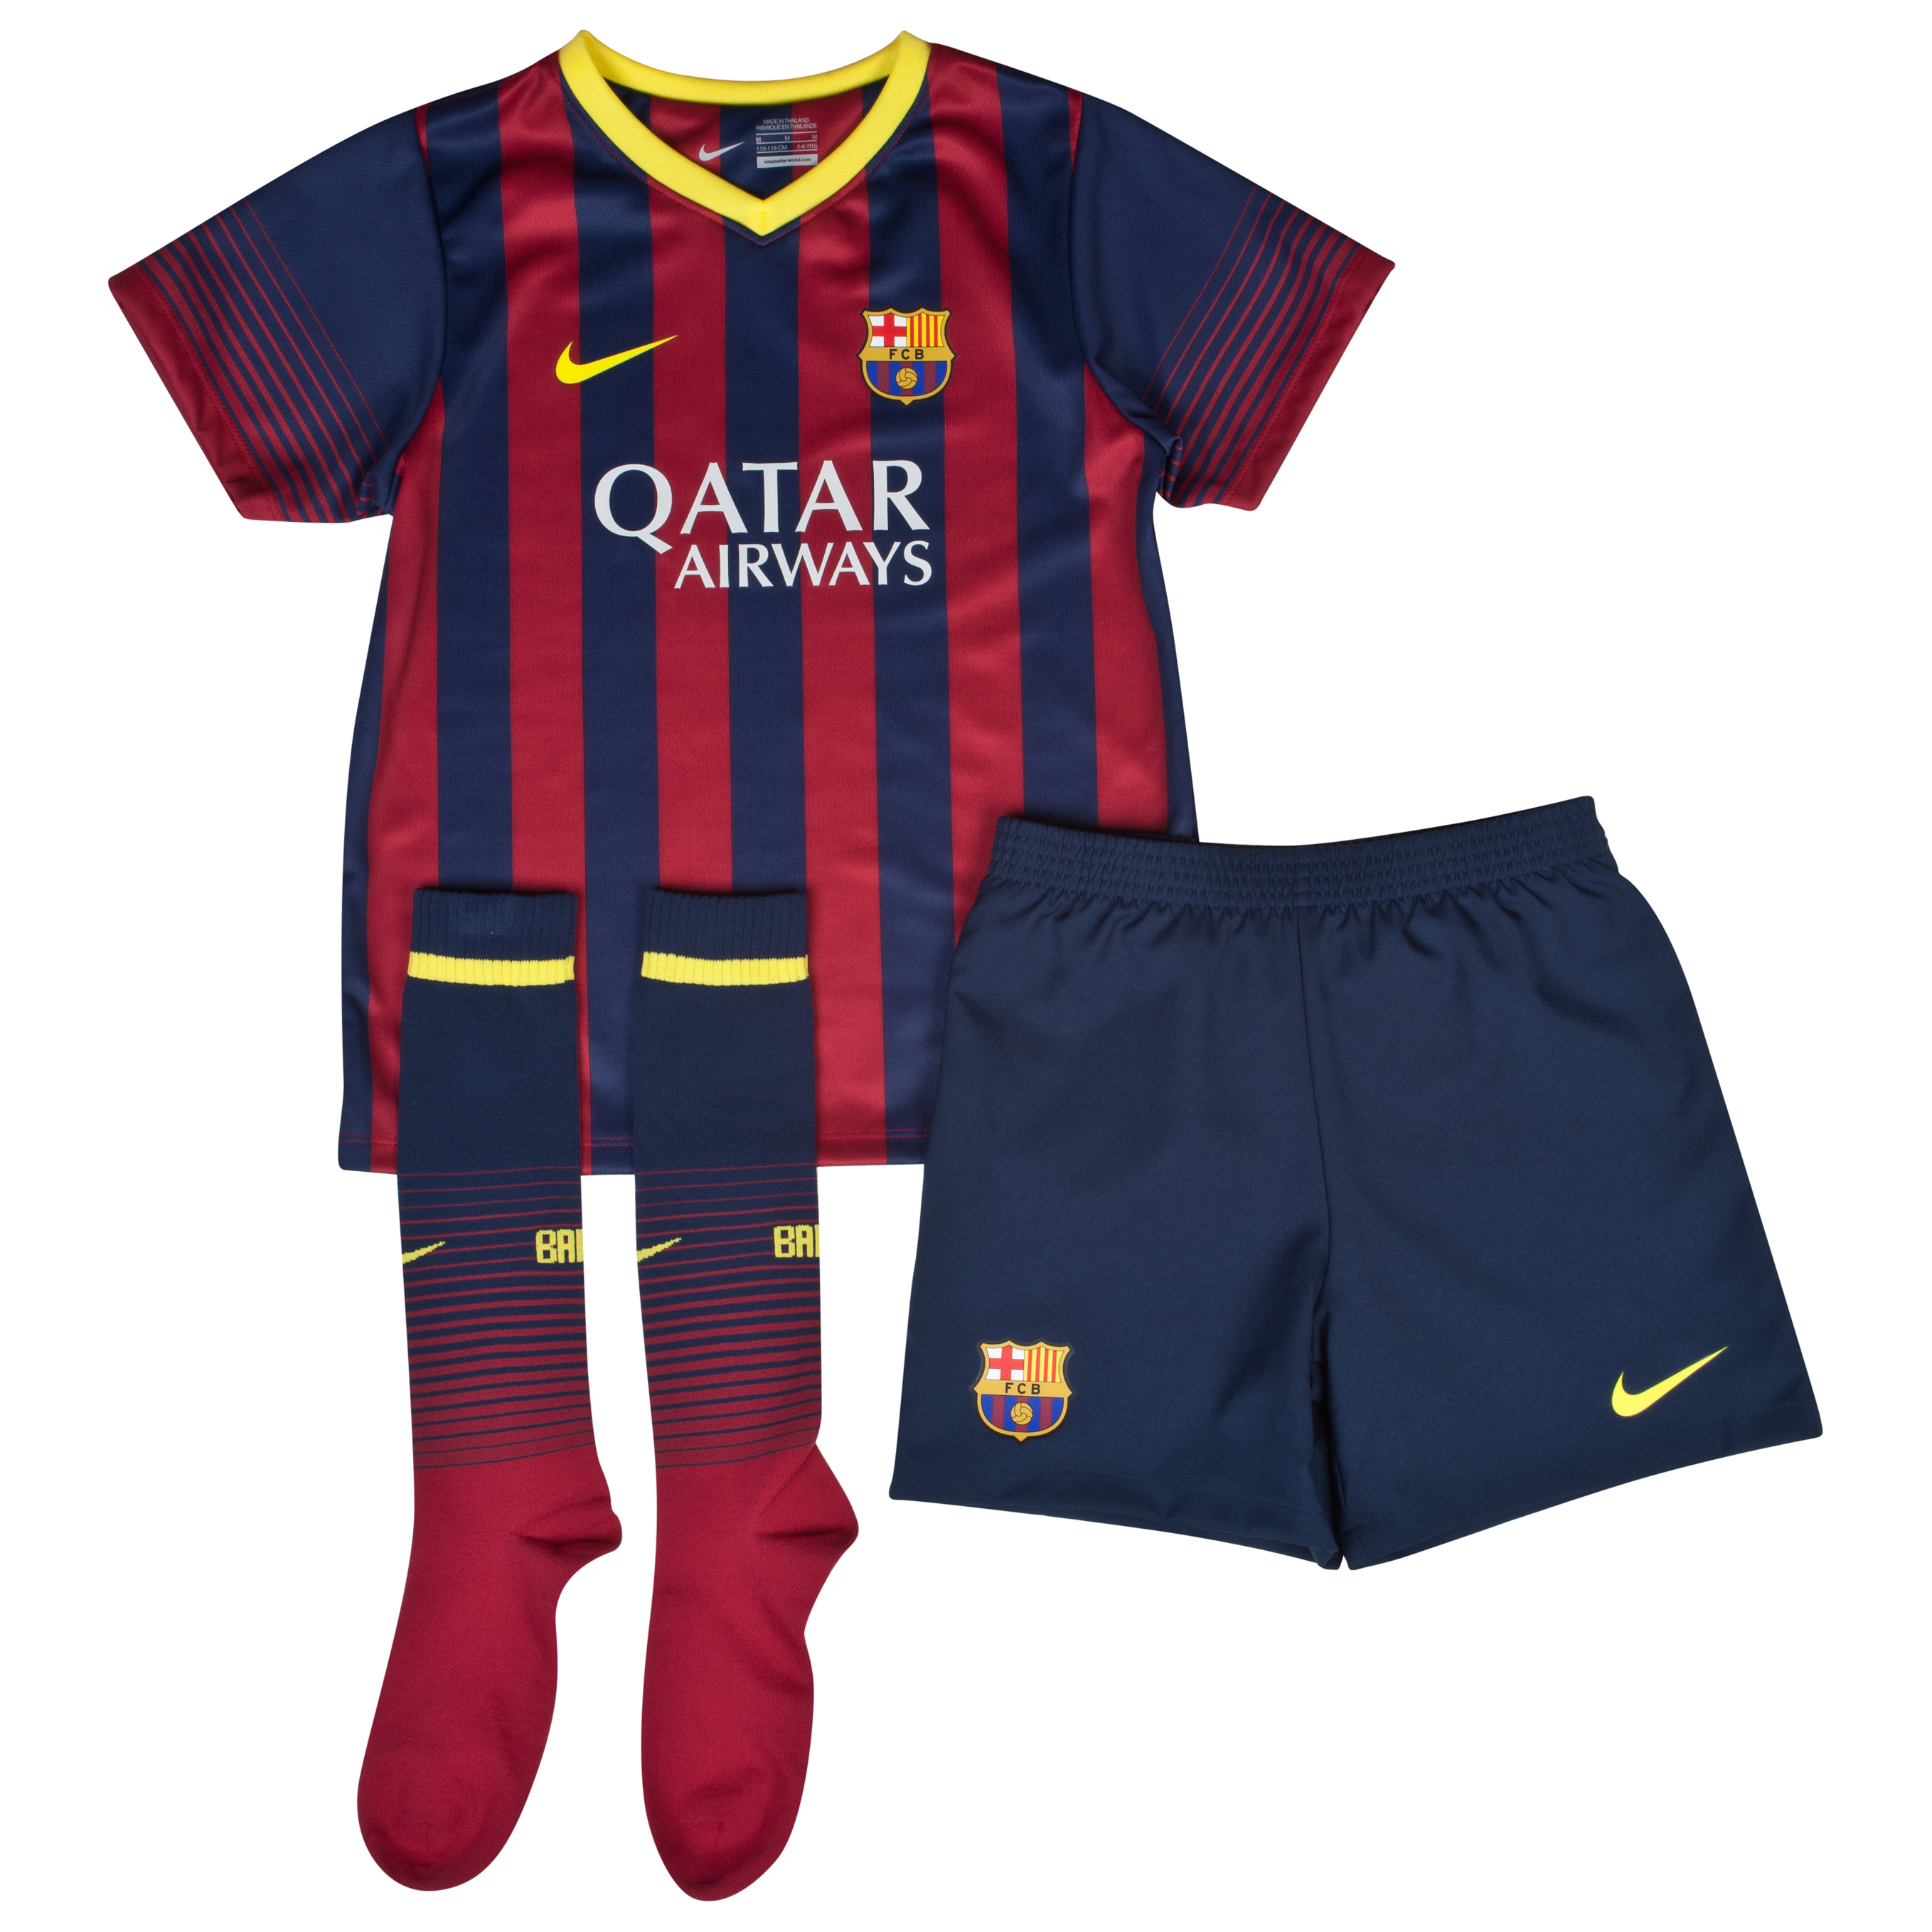 Barcelona Home Kit 2013/14 - Little Boys